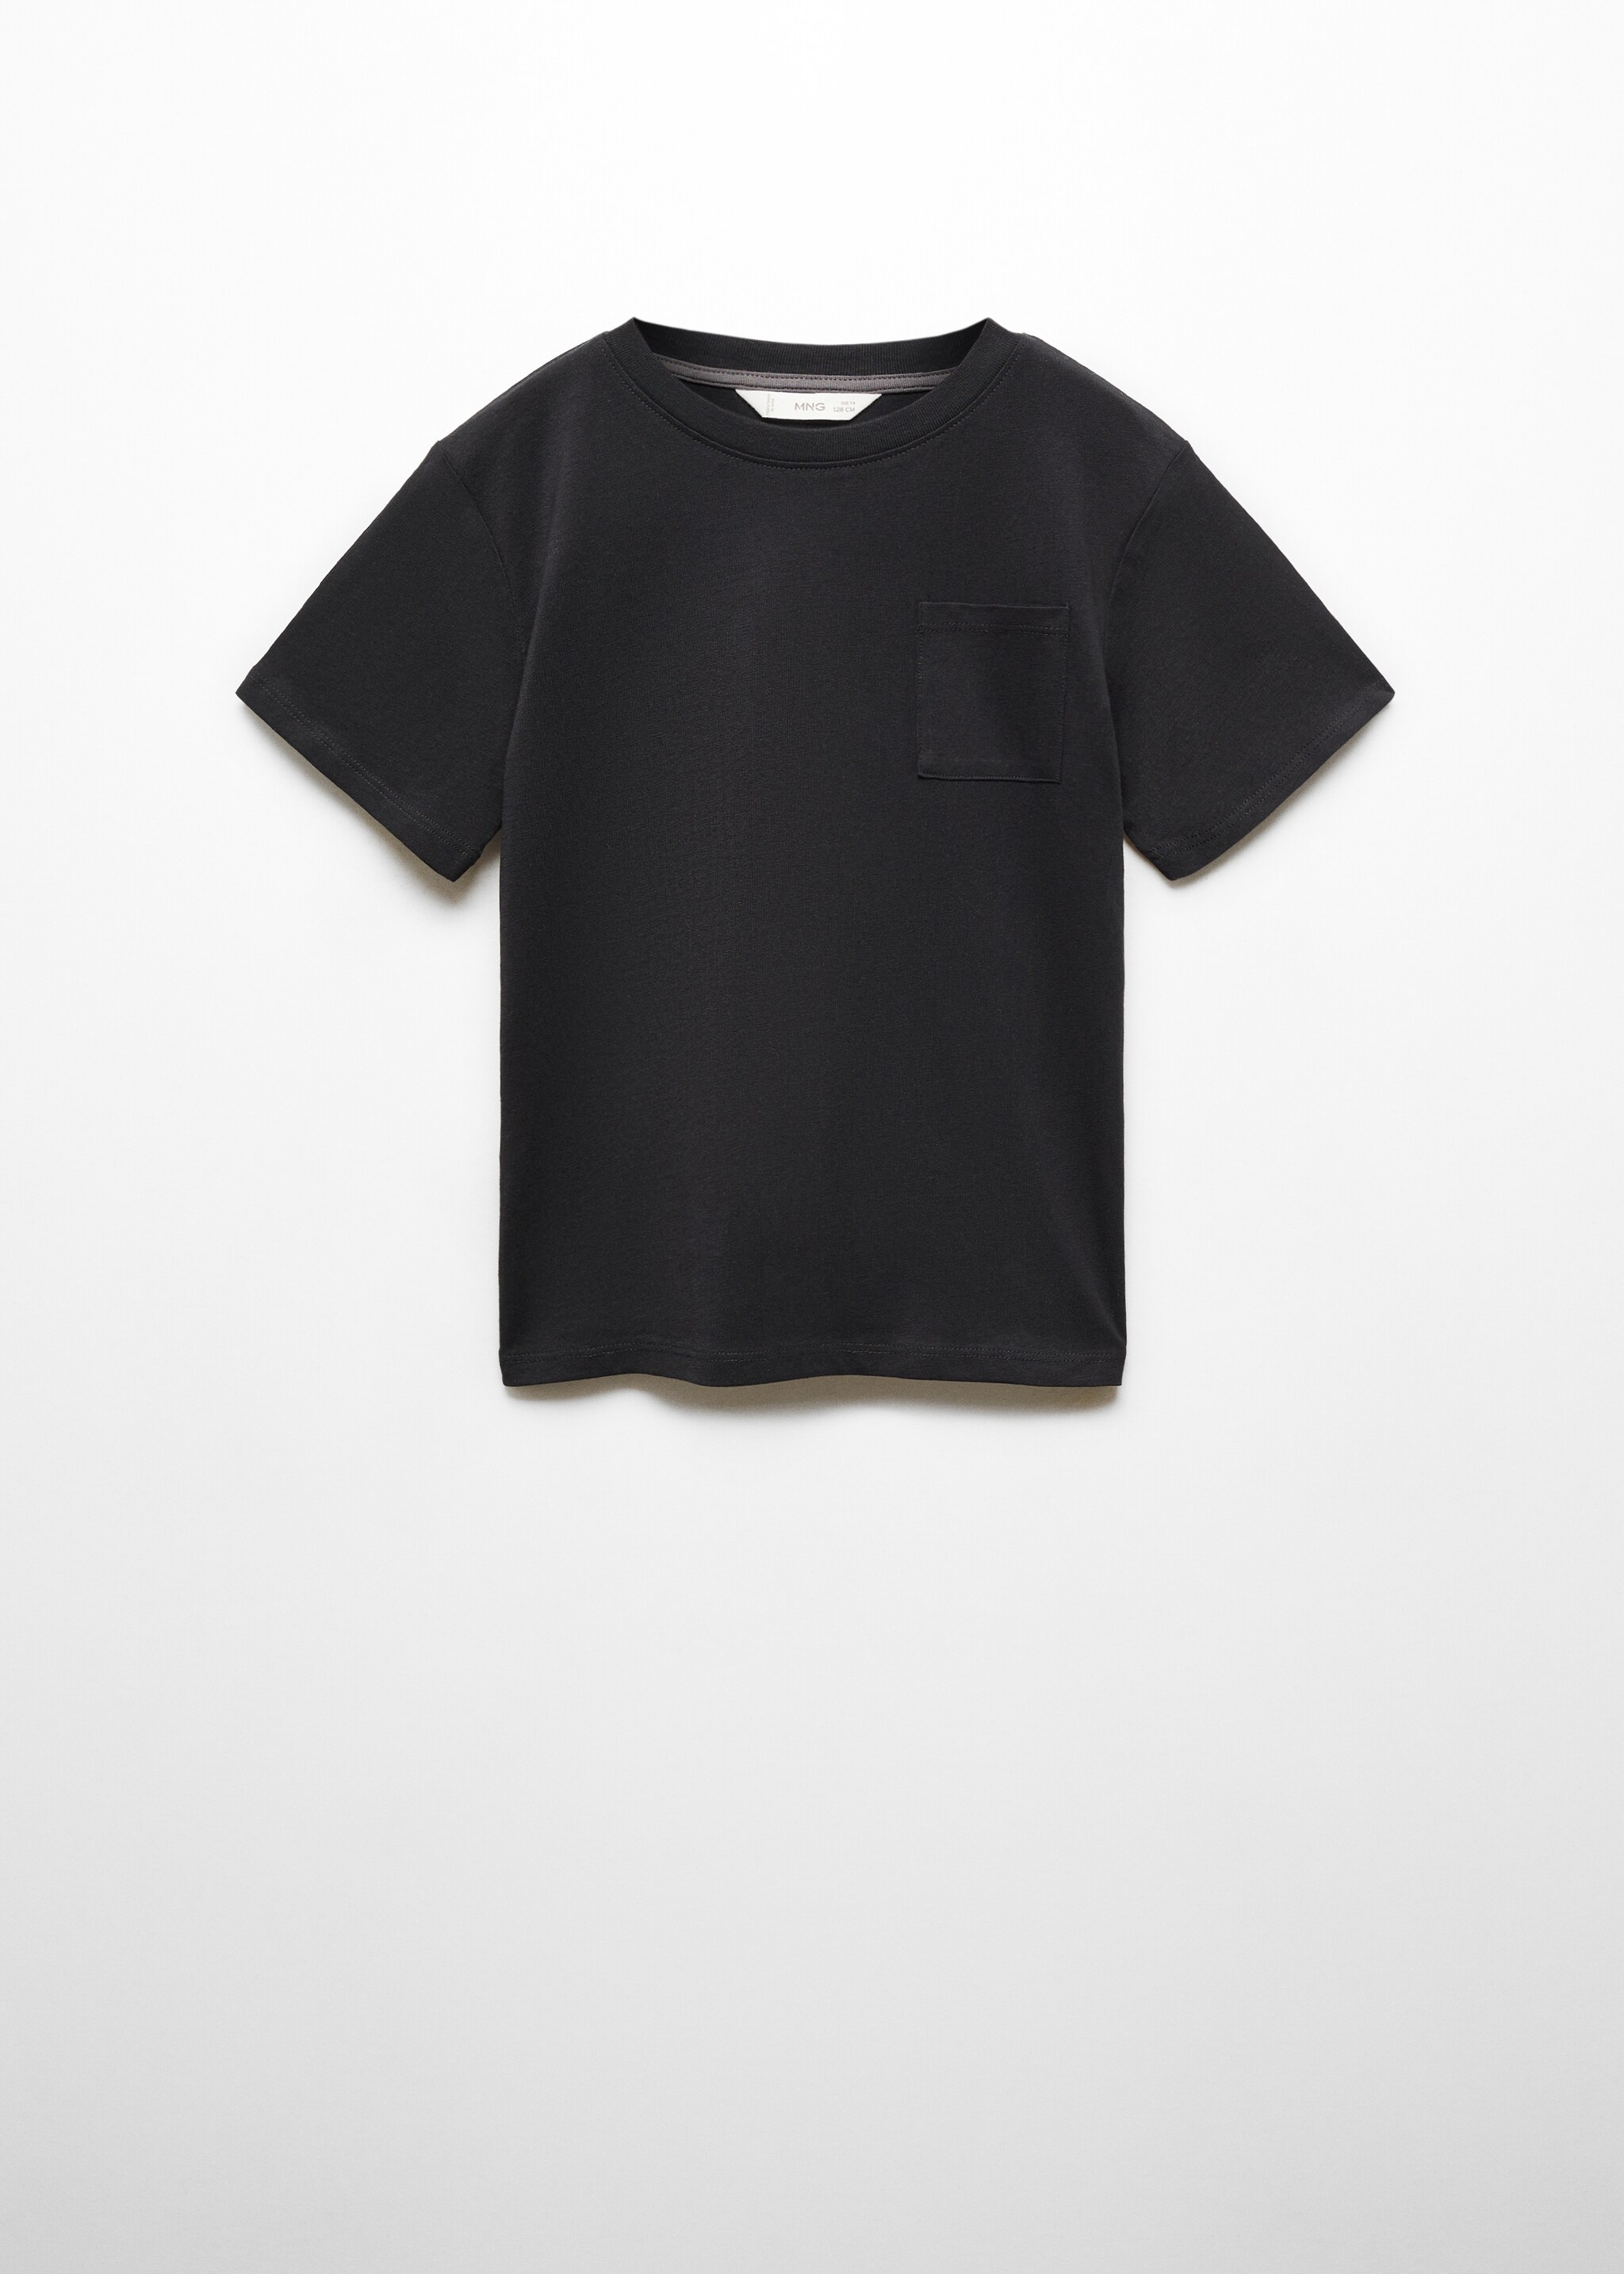 Camiseta básica algodón - Artículo sin modelo